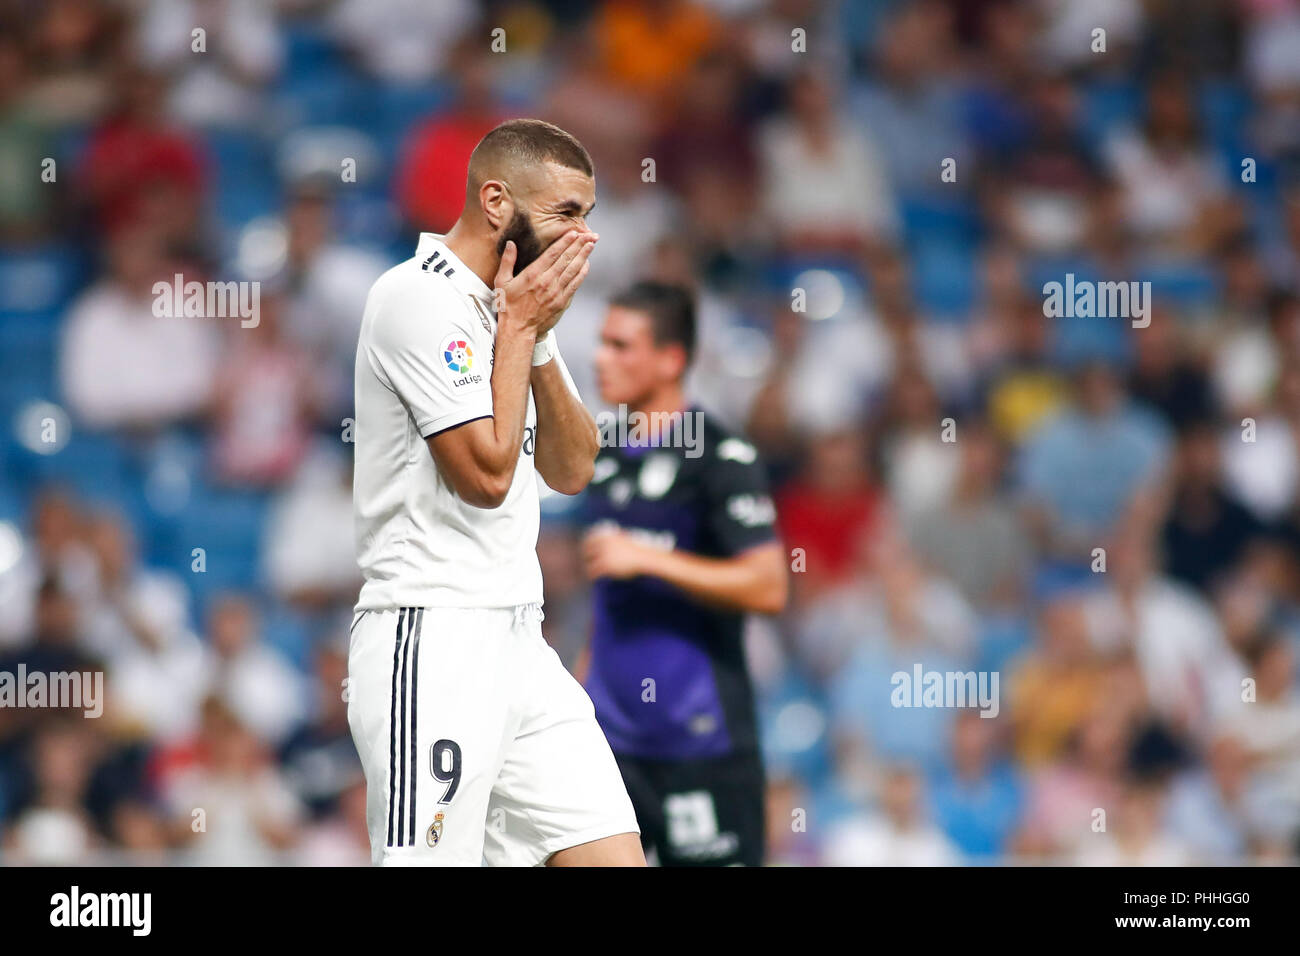 Karim Benzema von Real Madrid zu beklagen, die während der spanischen Liga, der Primera División, Fußballspiel zwischen Real Madrid und Leganes am September 01th, 2018 in Santiago Bernabeu in Madrid, Spanien. 1. Sep 2018. Quelle: AFP 7/ZUMA Draht/Alamy leben Nachrichten Stockfoto